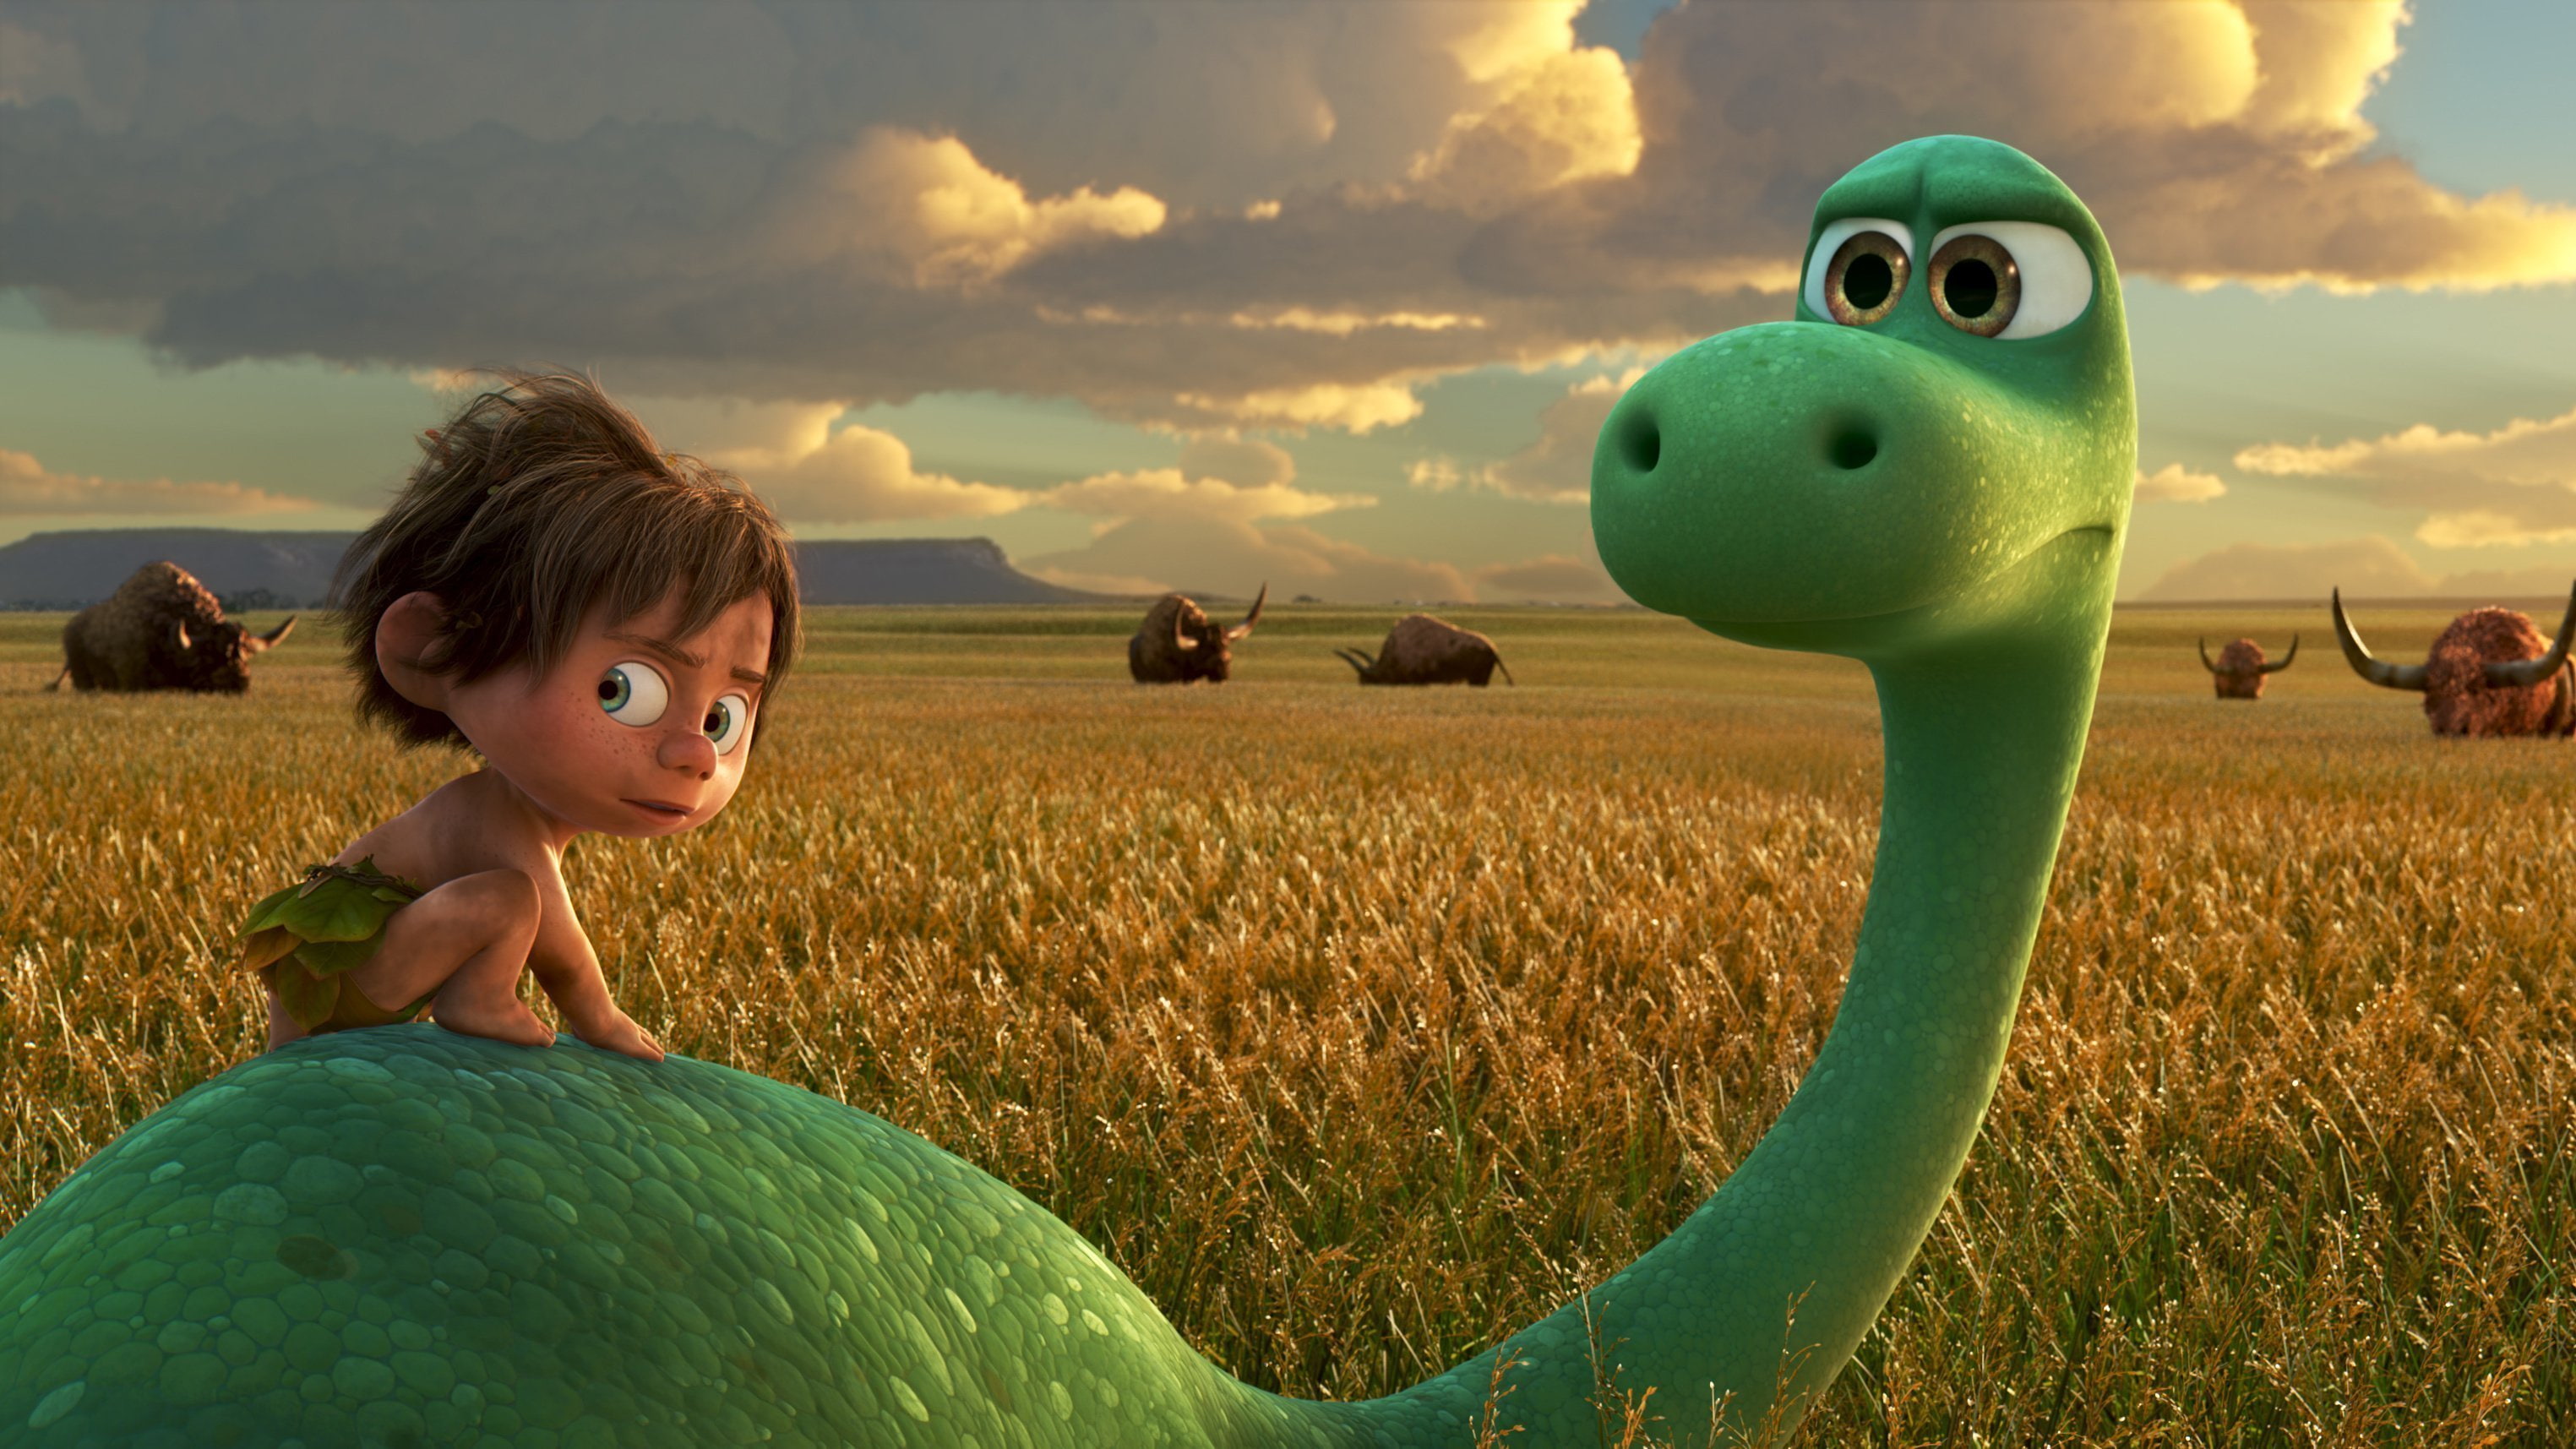 pixar, disney, movies, the good dinosaur, animated movies, 2016 movies